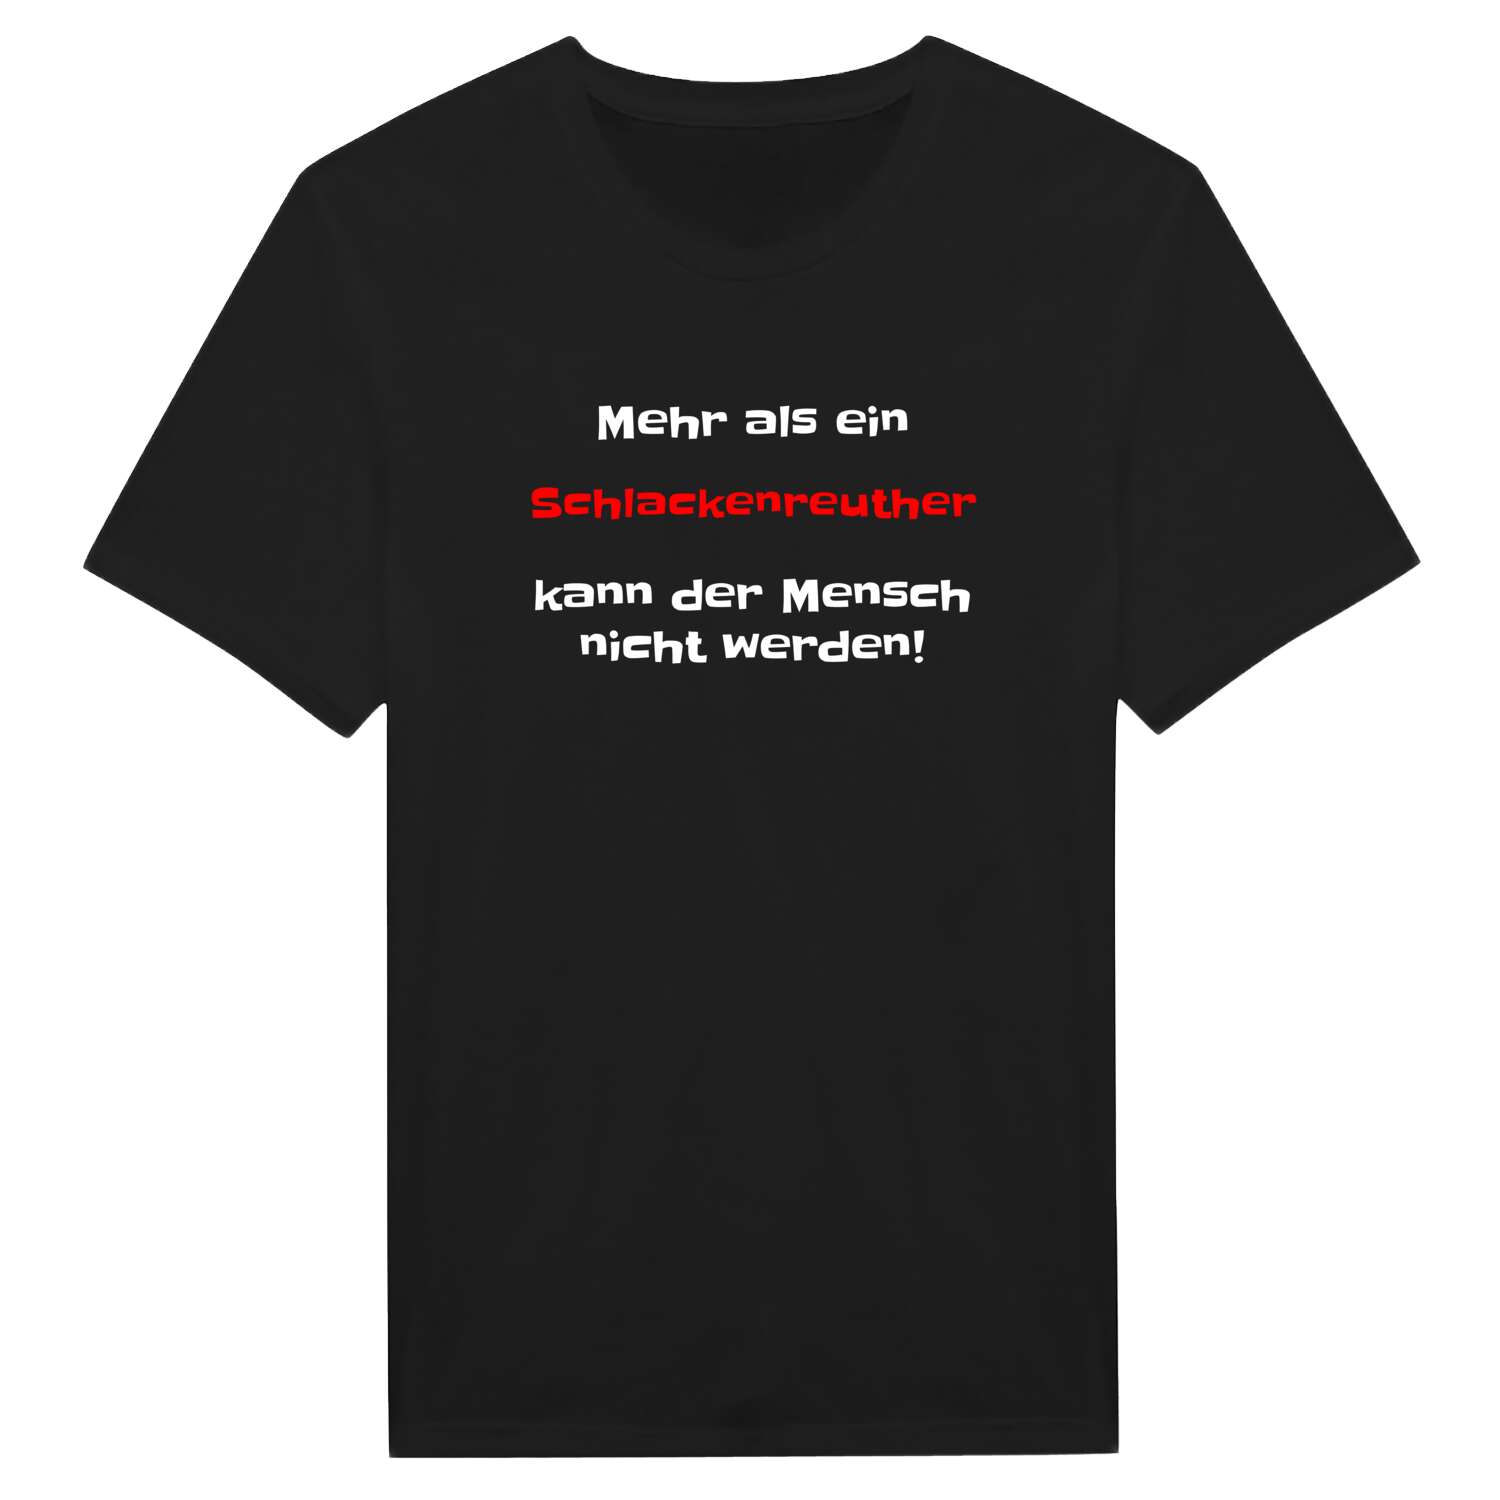 Schlackenreuth T-Shirt »Mehr als ein«